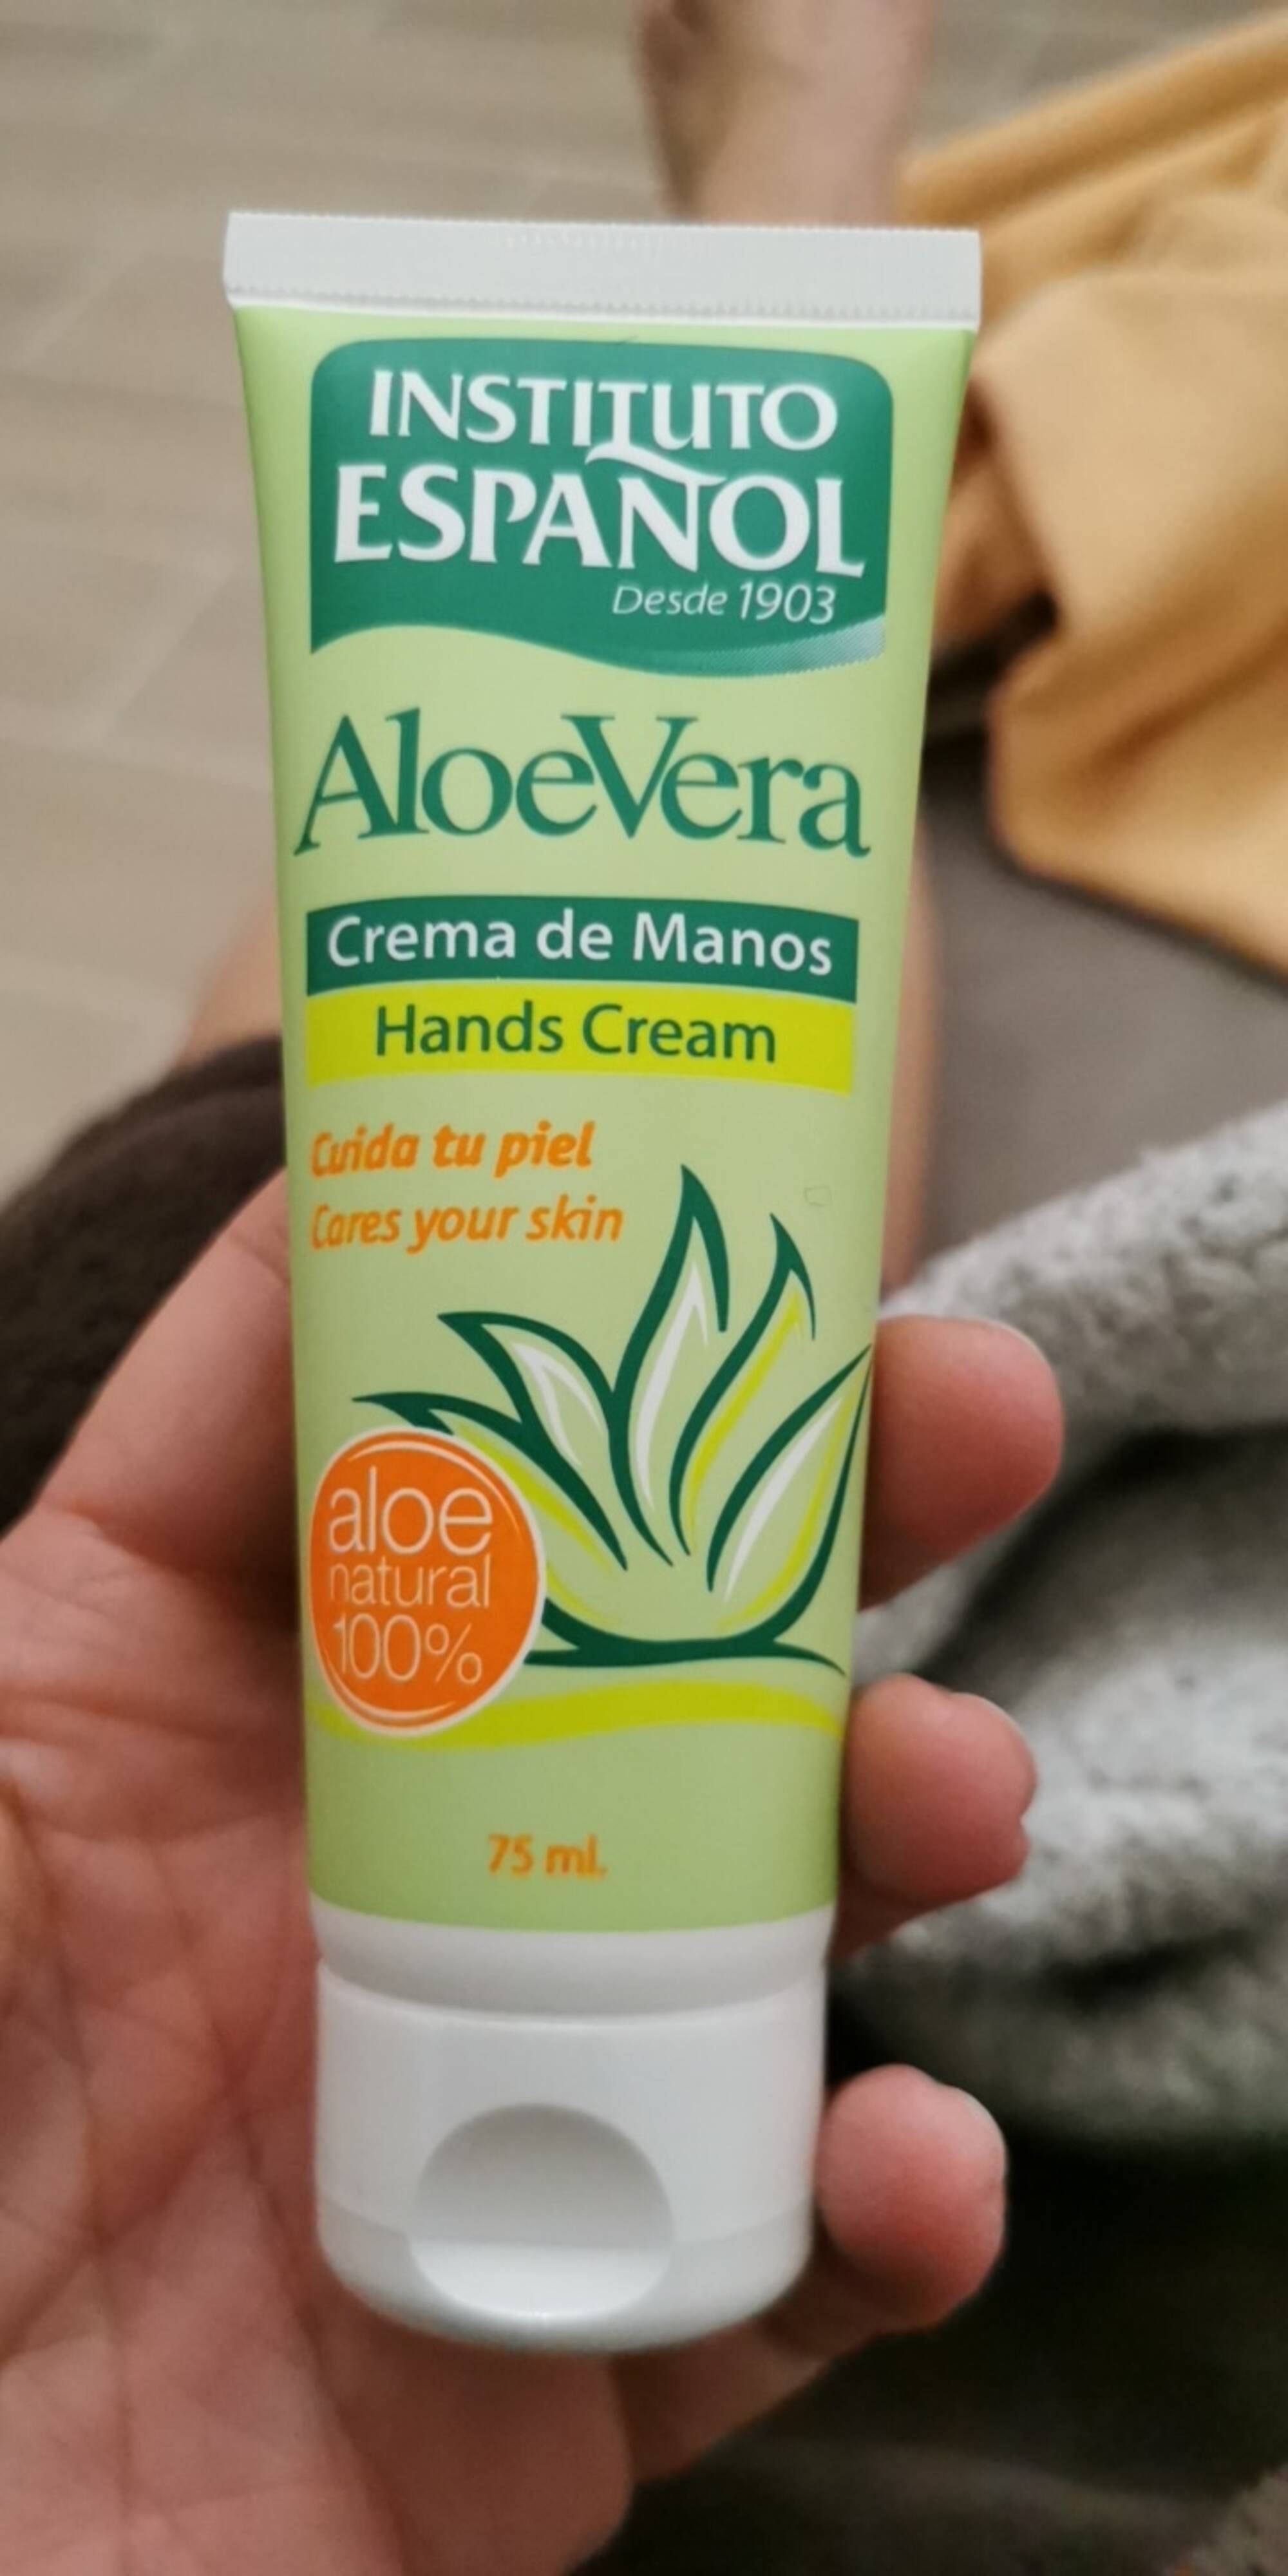 INSTITUTO ESPANOL - Aloe vera - Hands cream